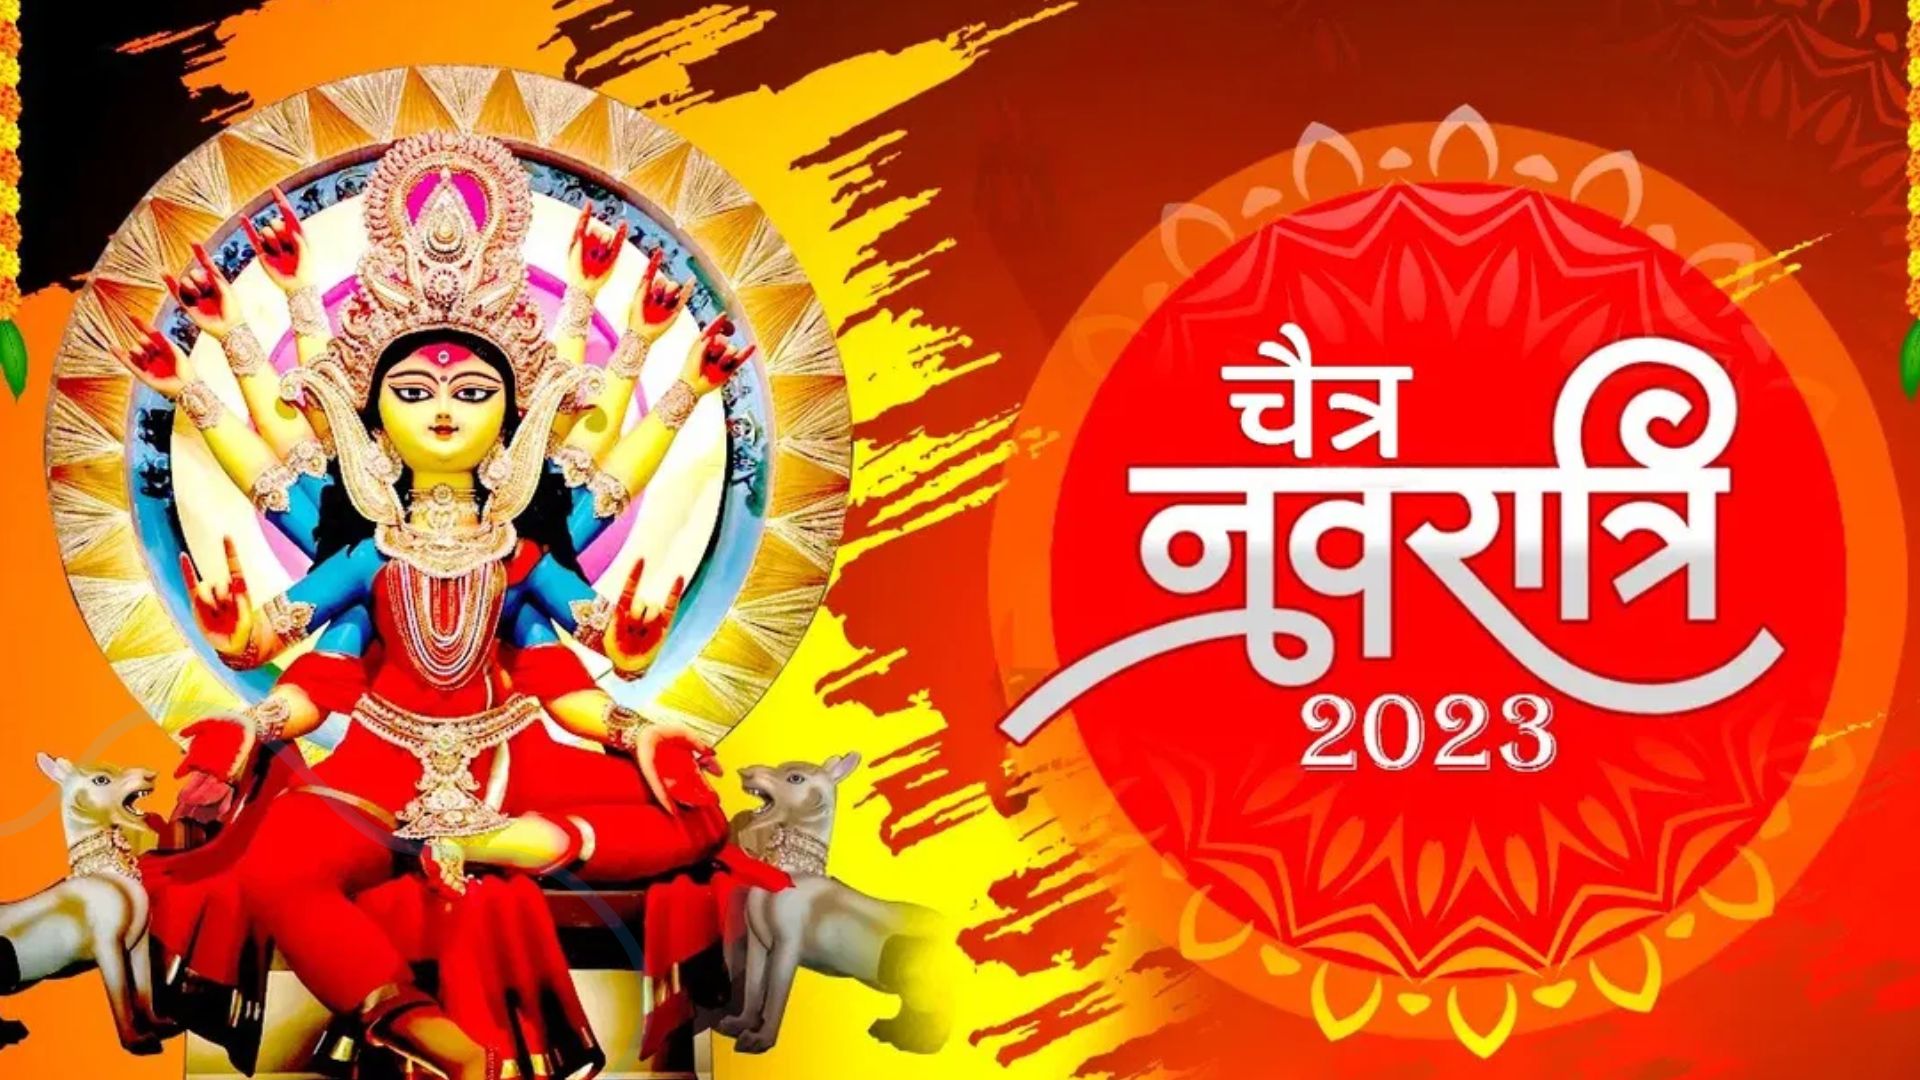 Chaitra Navratri 2023 : जानिए क्या है इस बार जगत जननी की सवारी, 22 मार्च को घर-घर पधारेंगी मां दुर्गा